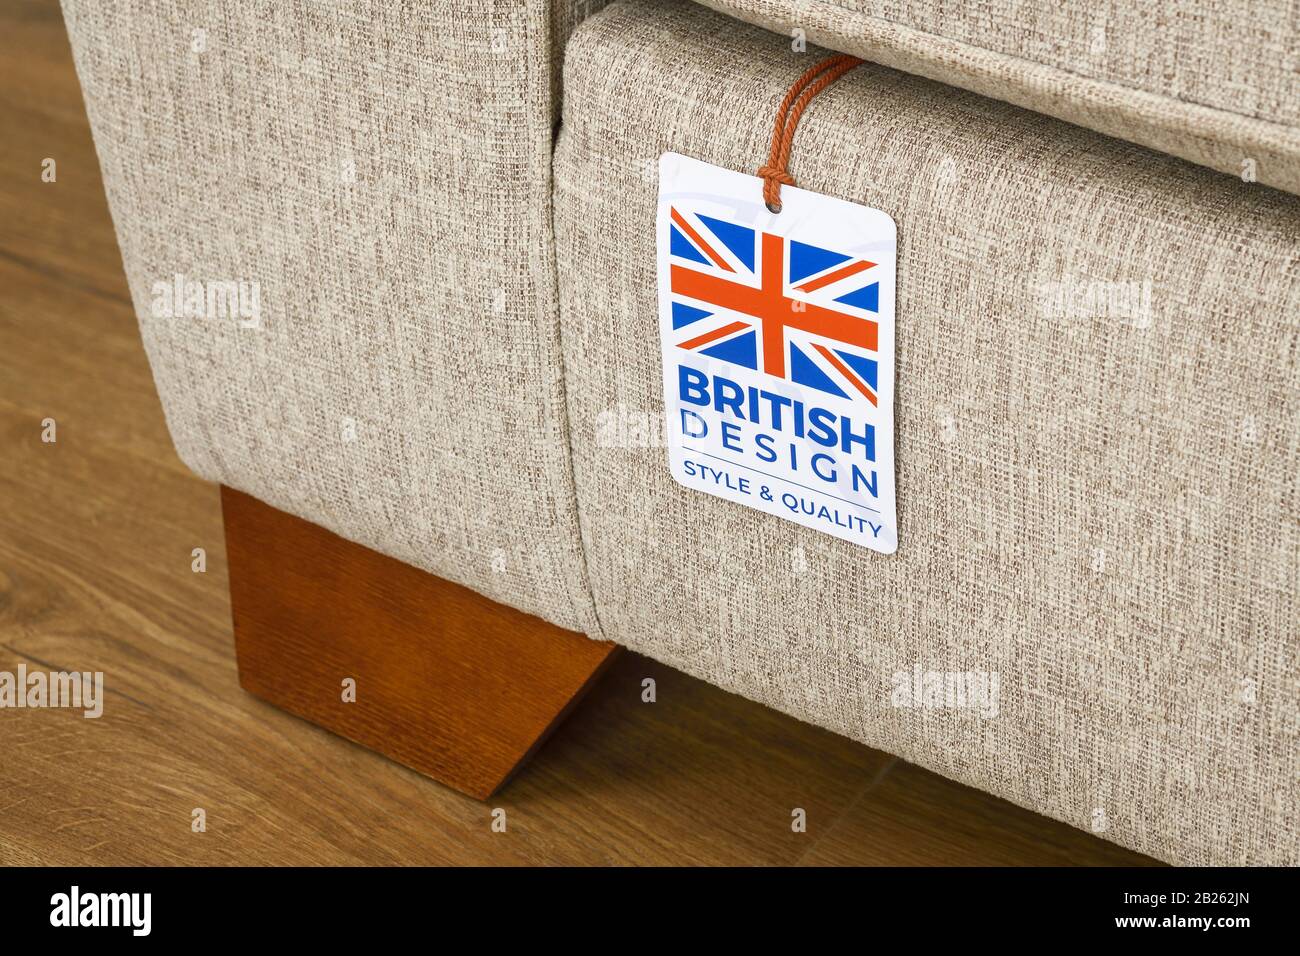 Ein britisches Designlabel auf einem Sofa Stockfoto